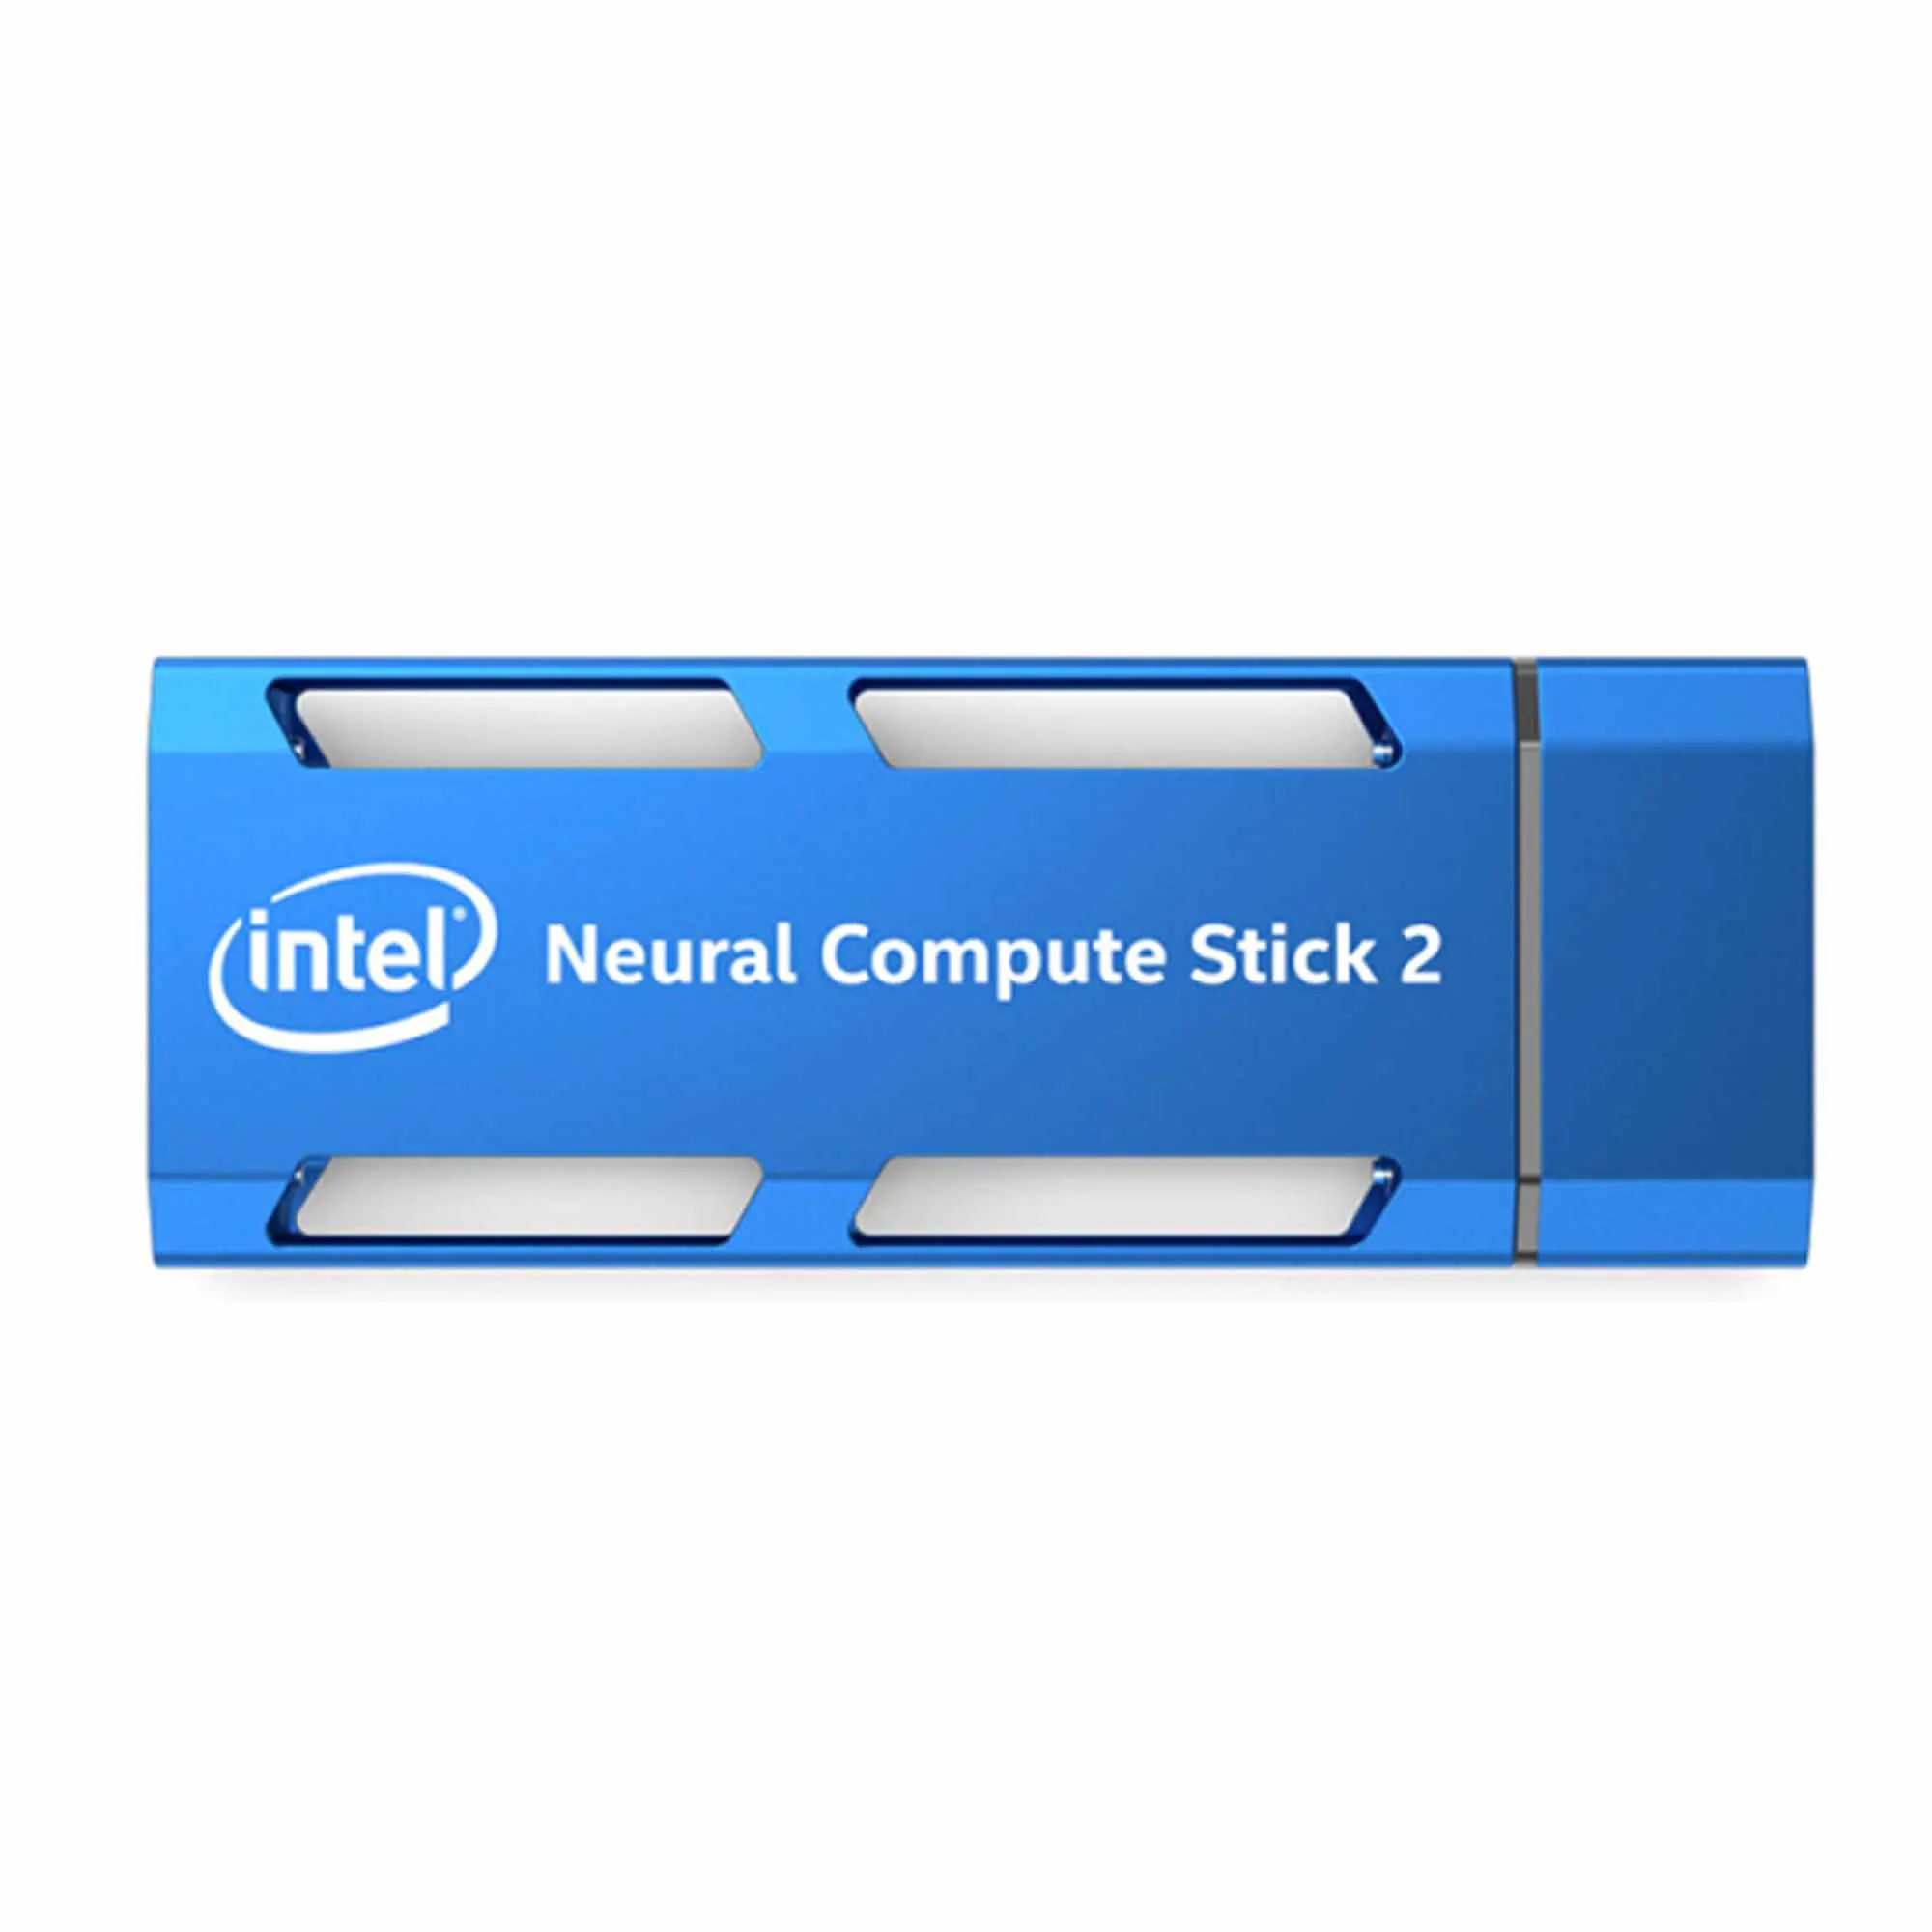 Intel NCS2 Movidius Neural Compute Stick 2, идеально подходящий для приложений с глубокими нейронными сетями (DNN) Изображение 5